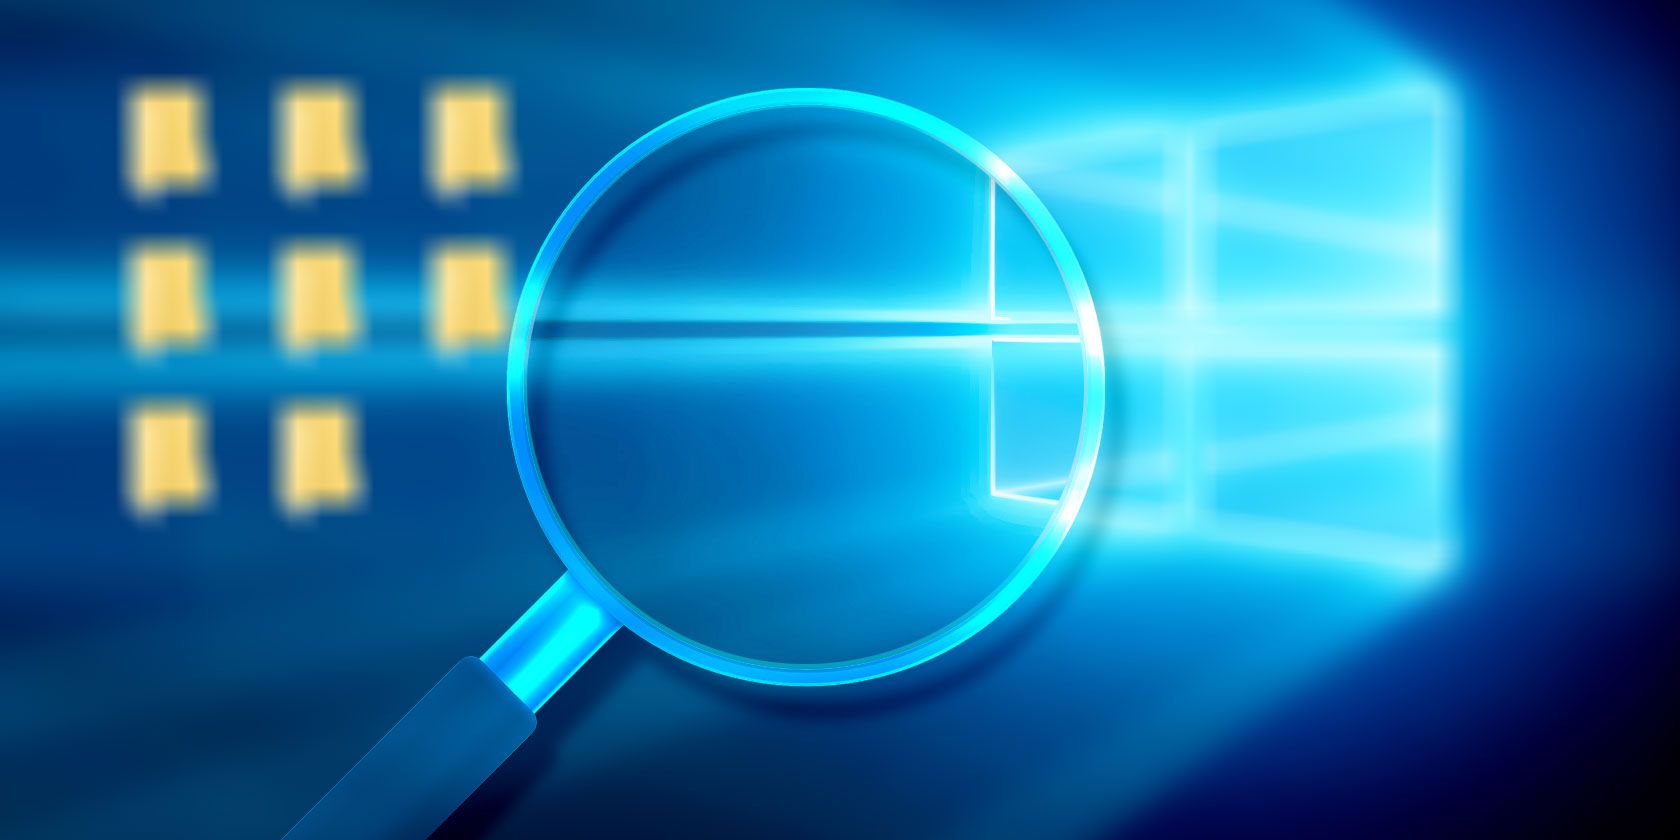 Vấn đề mà nhiều người gặp phải khi sử dụng Windows 10 là ứng dụng bị mờ. Chúng tôi hiểu được khó khăn của bạn và sẽ hướng dẫn bạn cách sửa chữa và khắc phục vấn đề này. Click để tìm hiểu thêm về cách xử lý những ứng dụng bị mờ trên Windows 10.